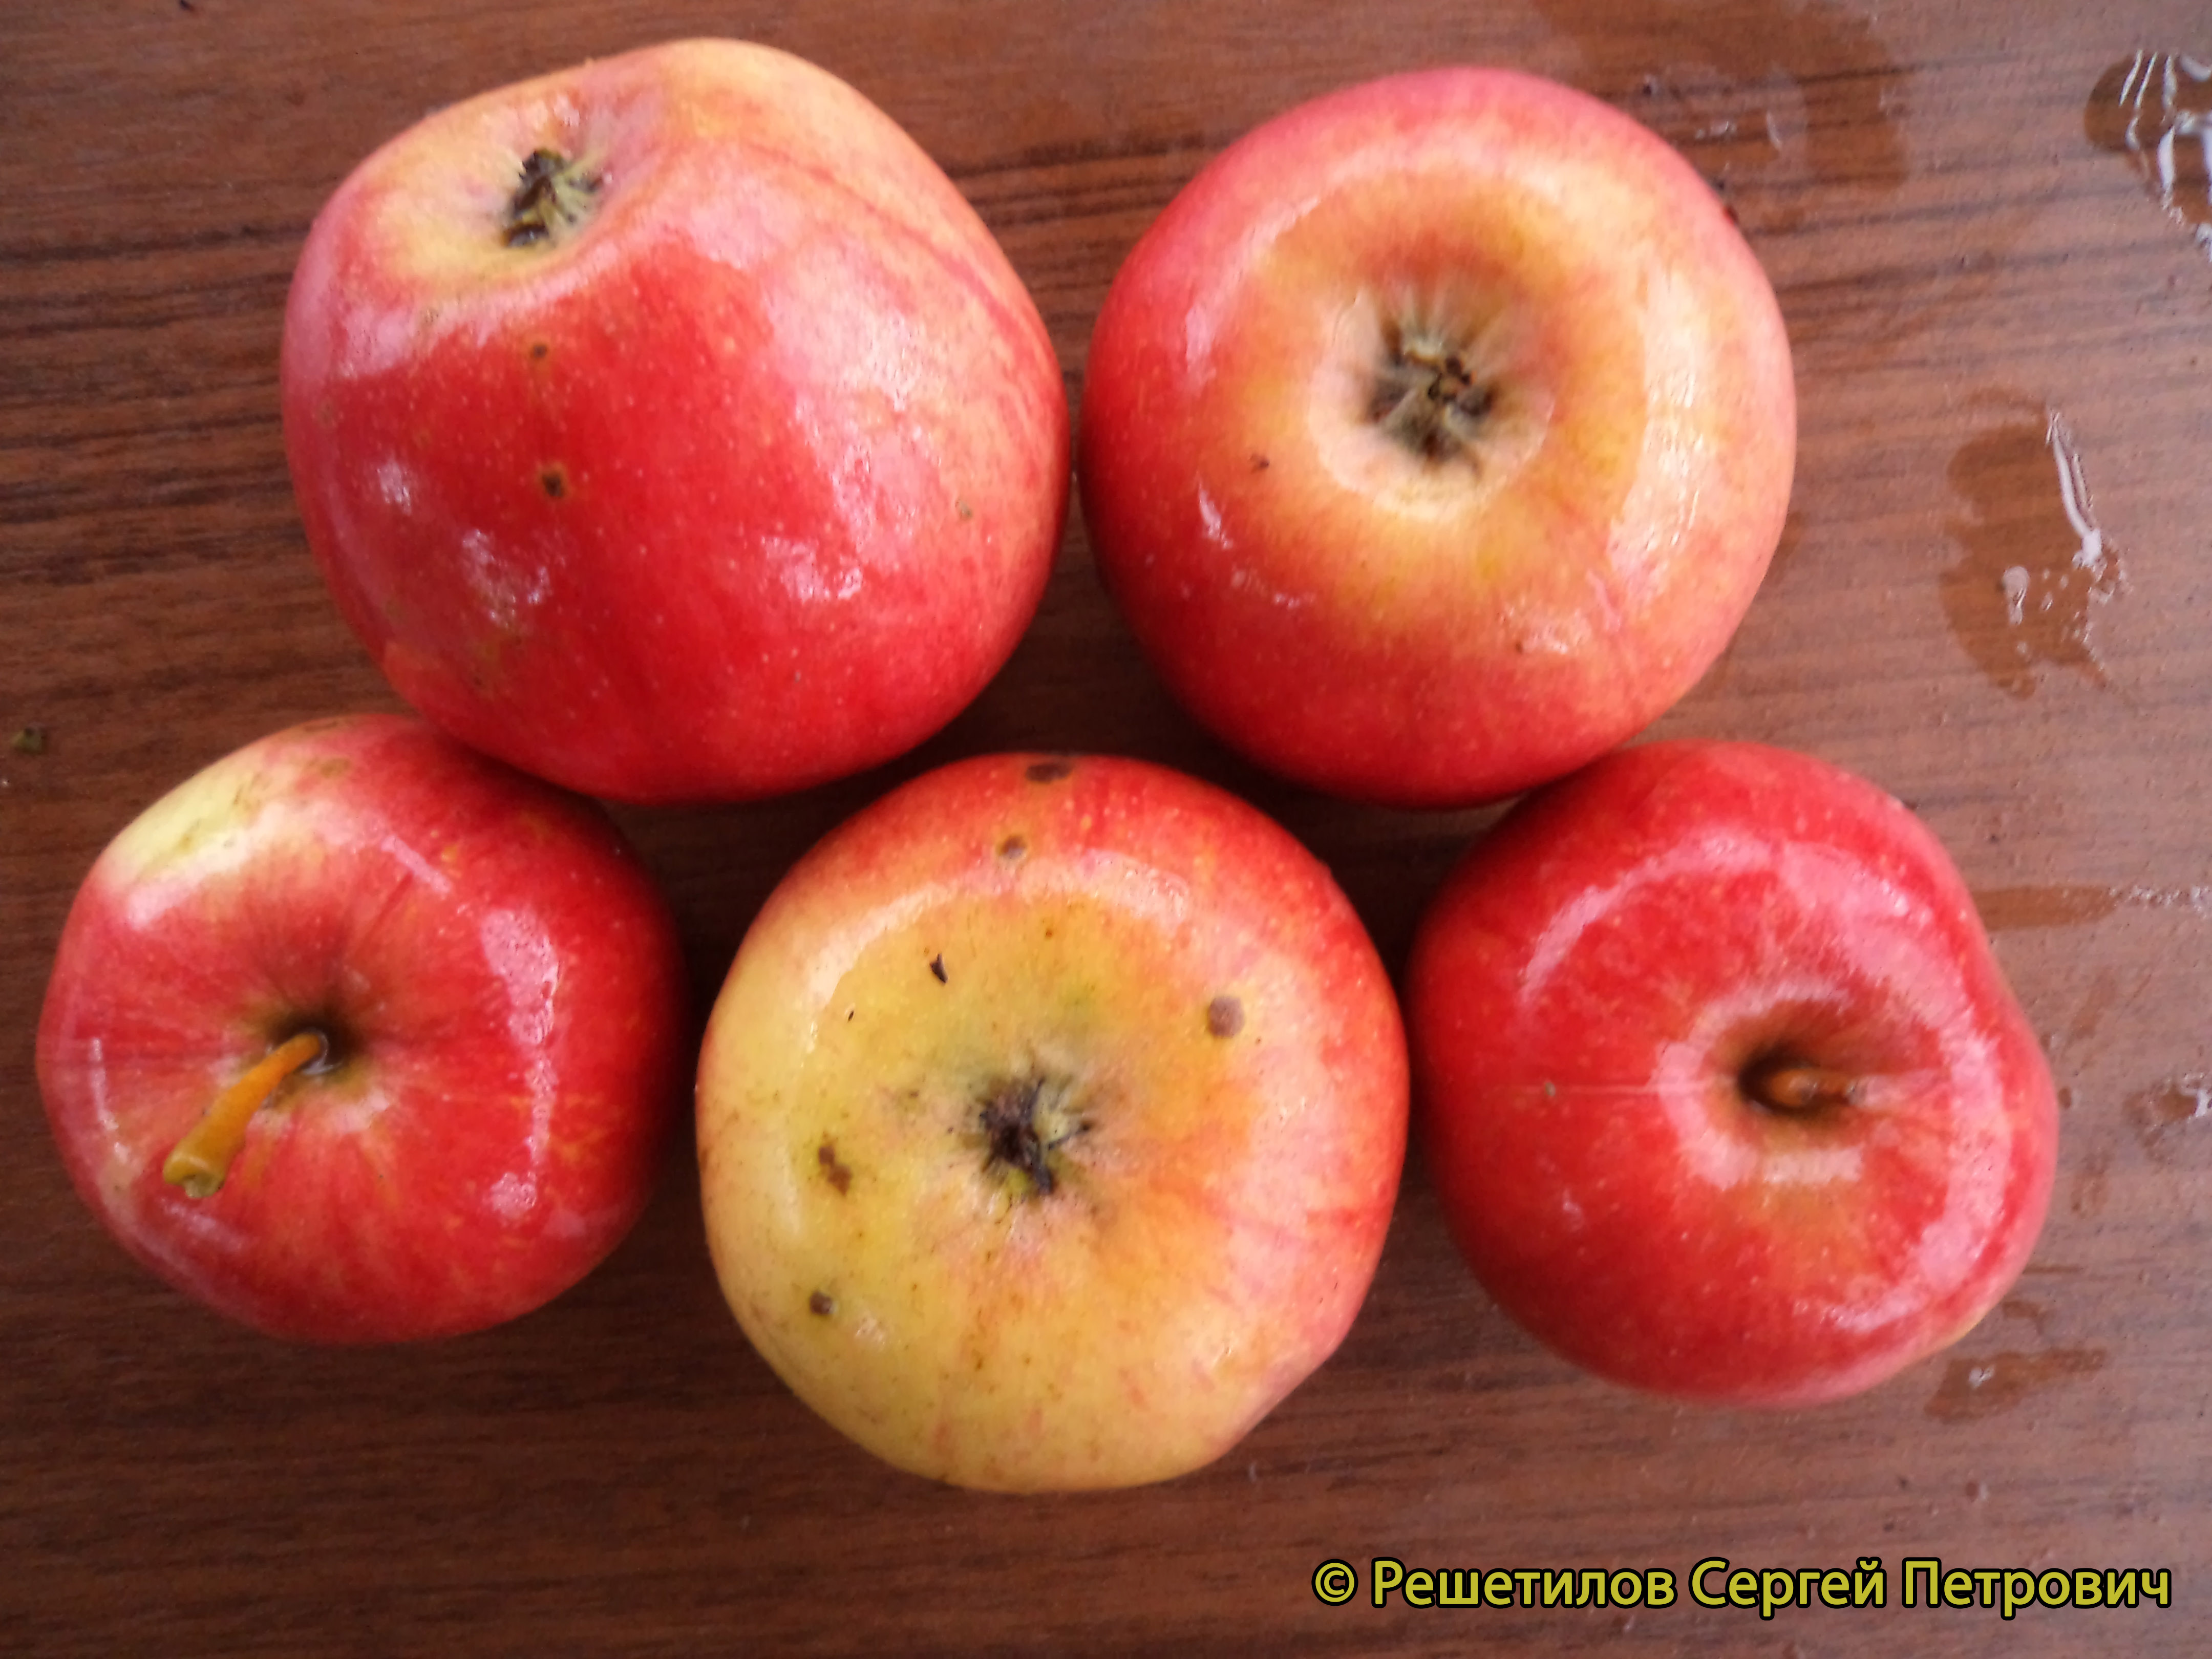 Яблоня Маяк Загорья - описание сорта и фото яблок